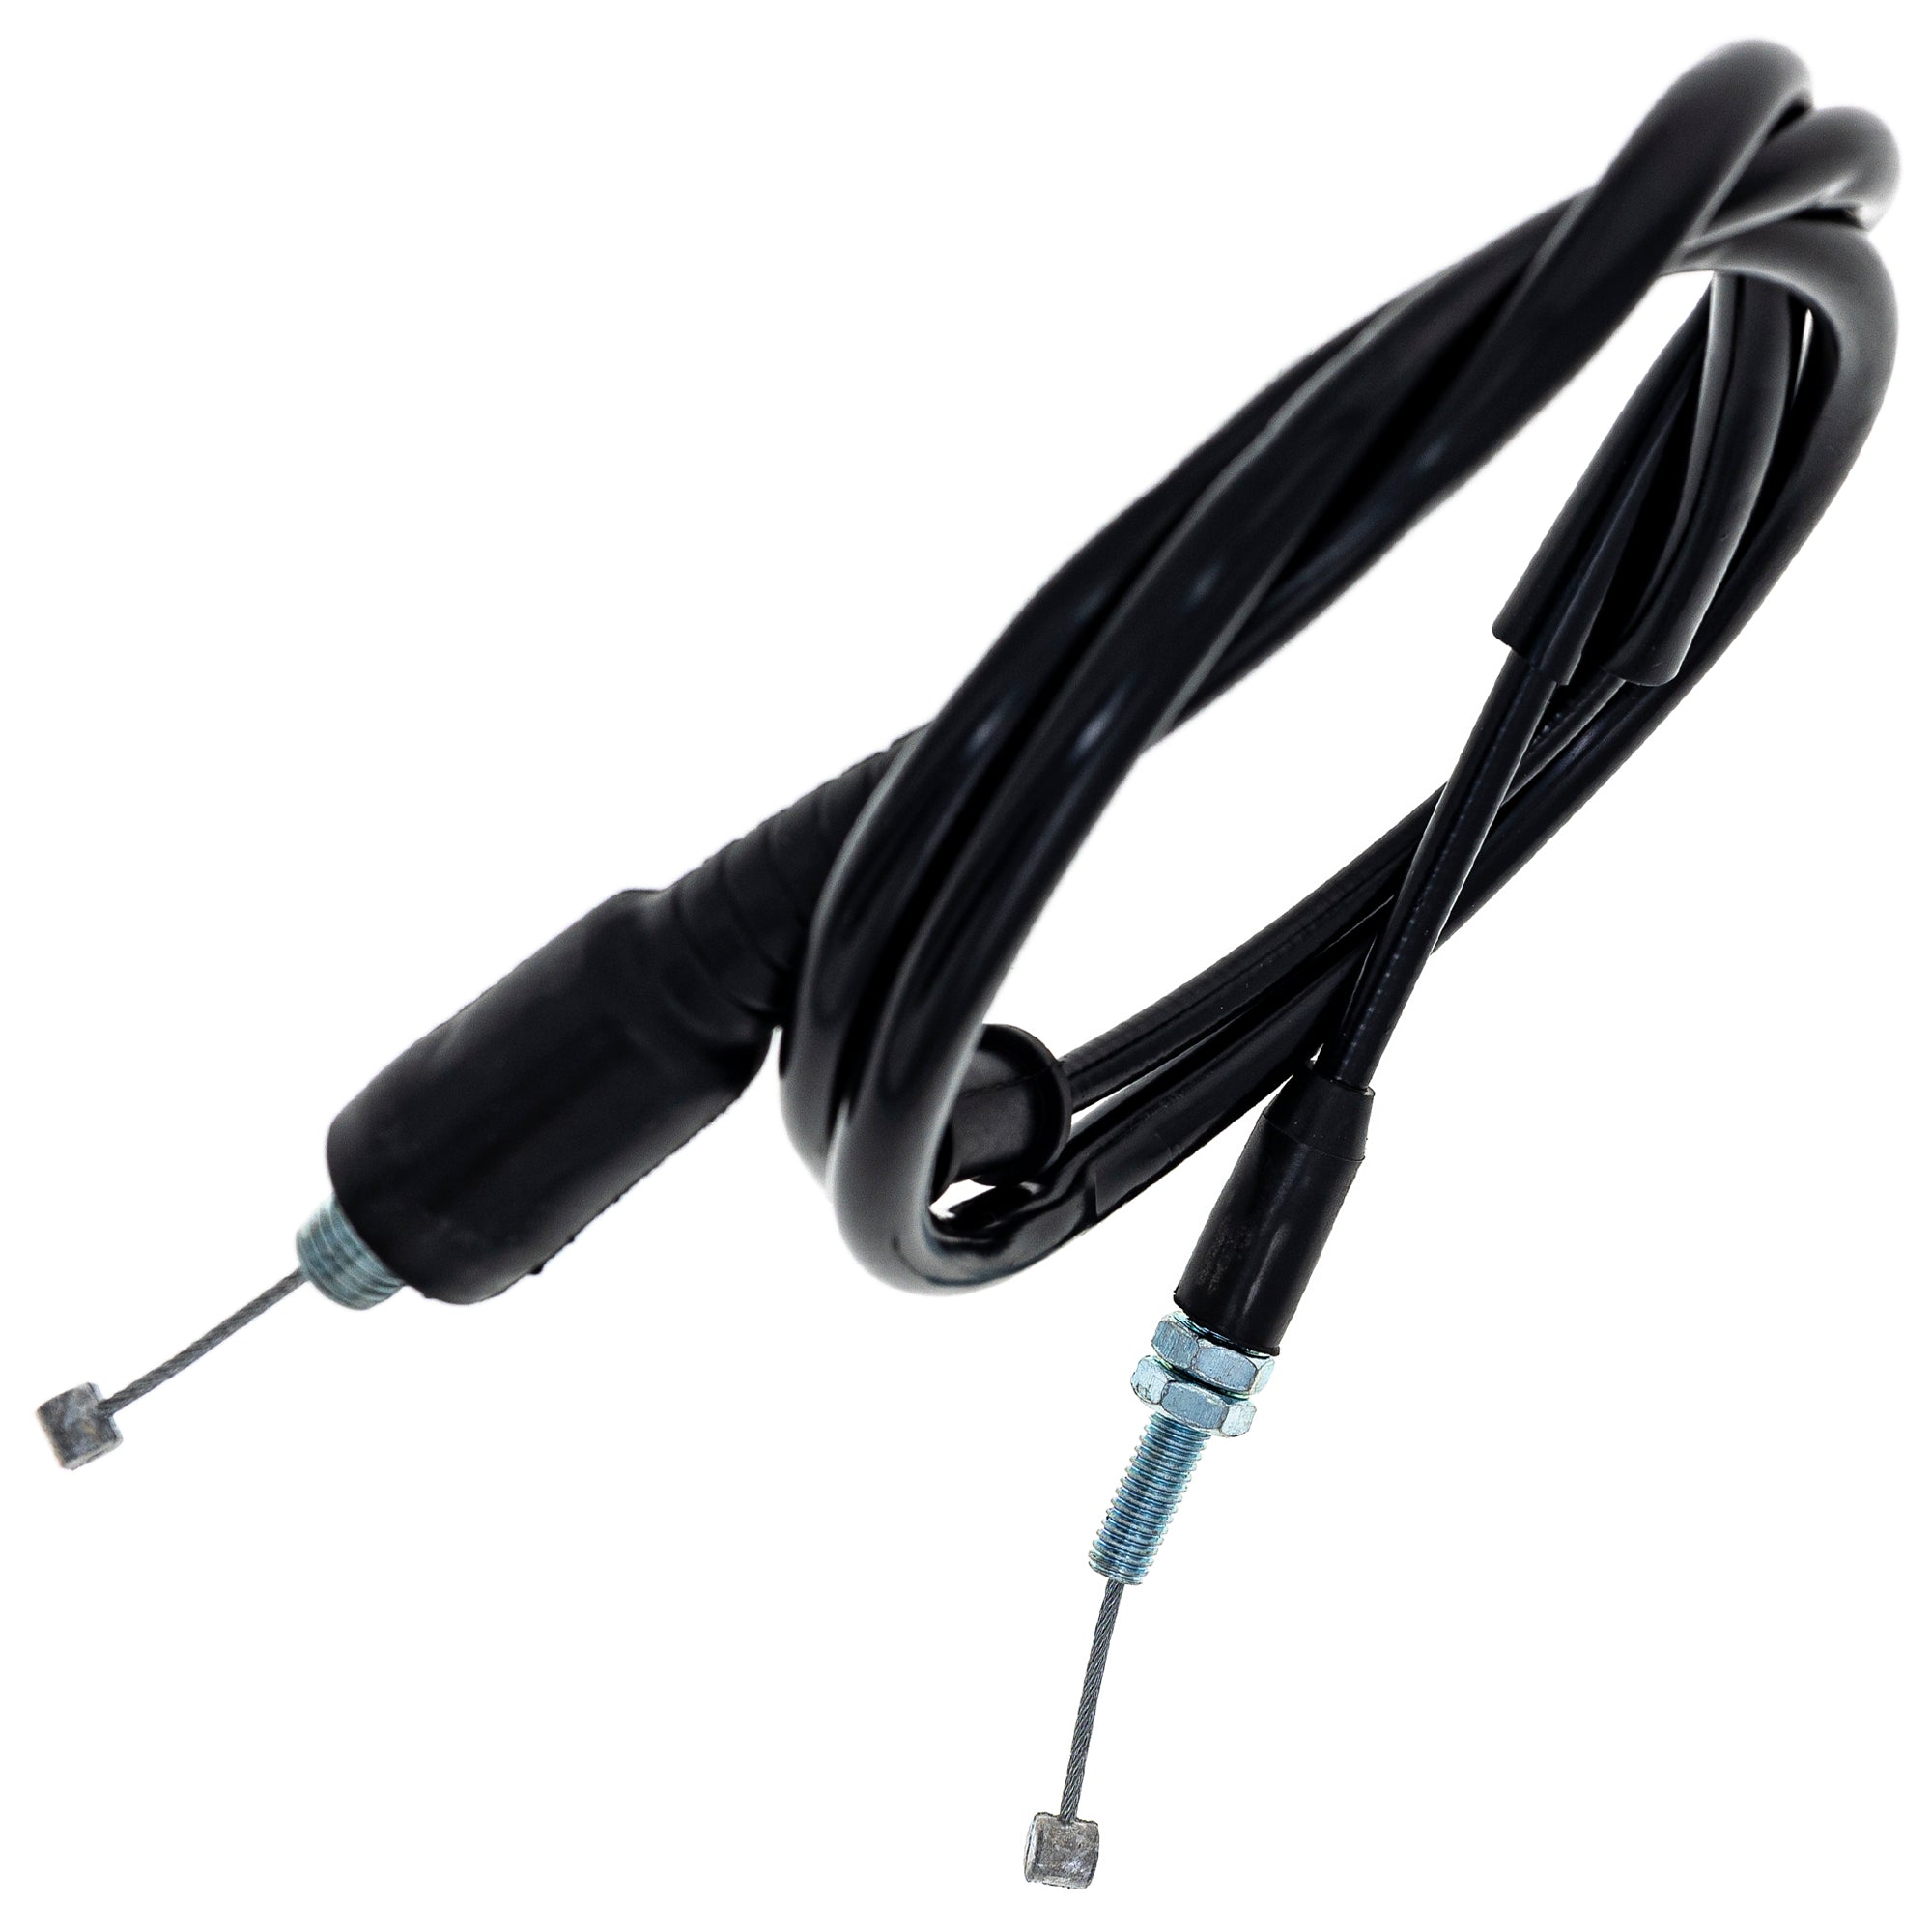 Throttle Cable for Suzuki King Quad 400 LTA400F 58300-27H00